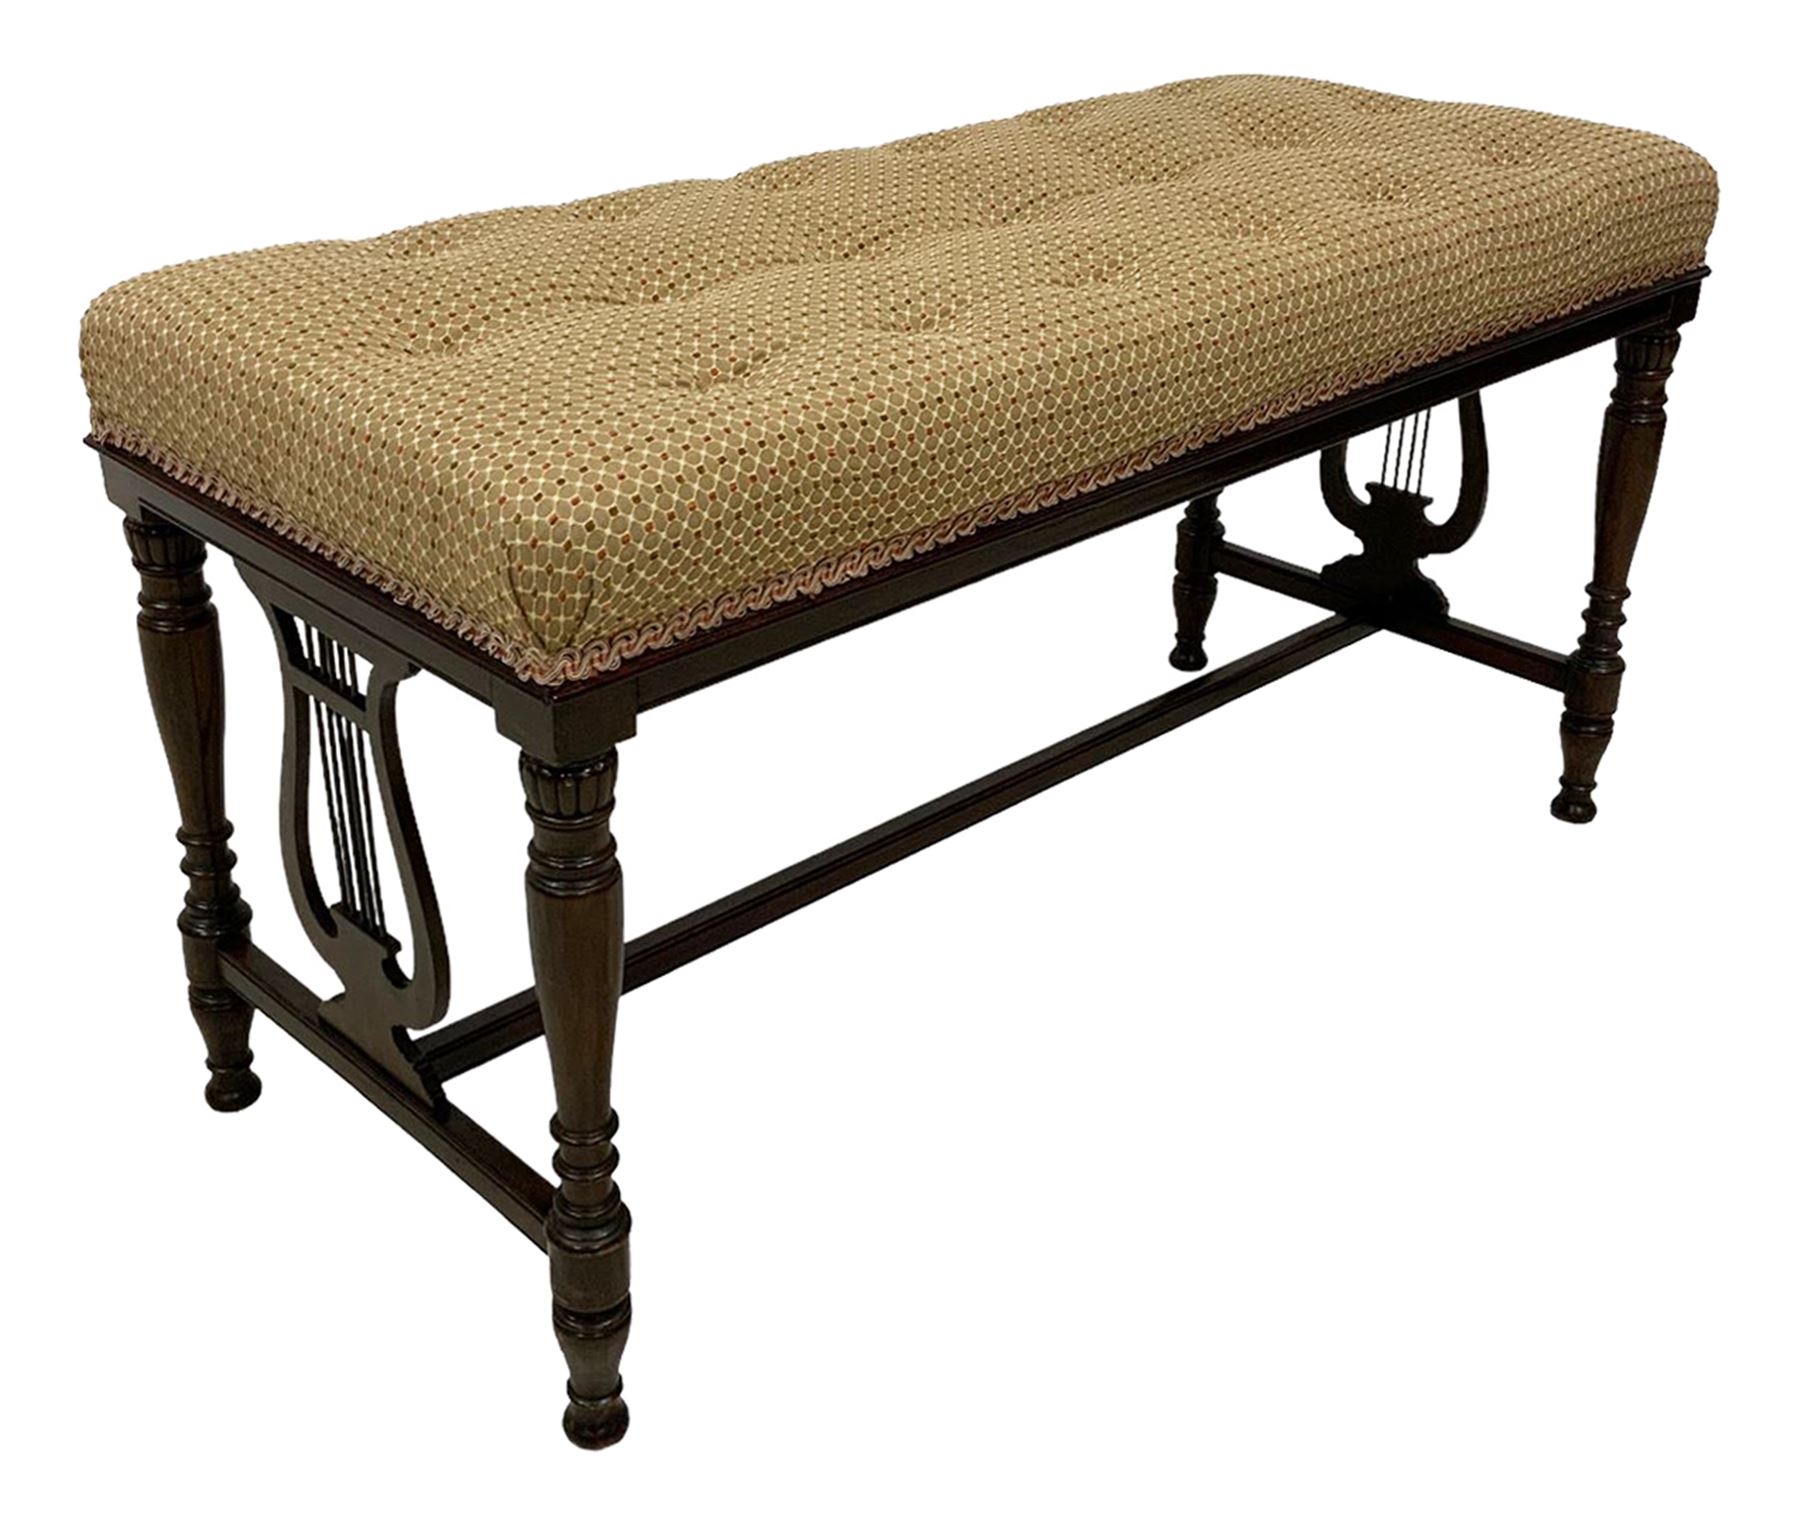 Regency design walnut piano duet stool